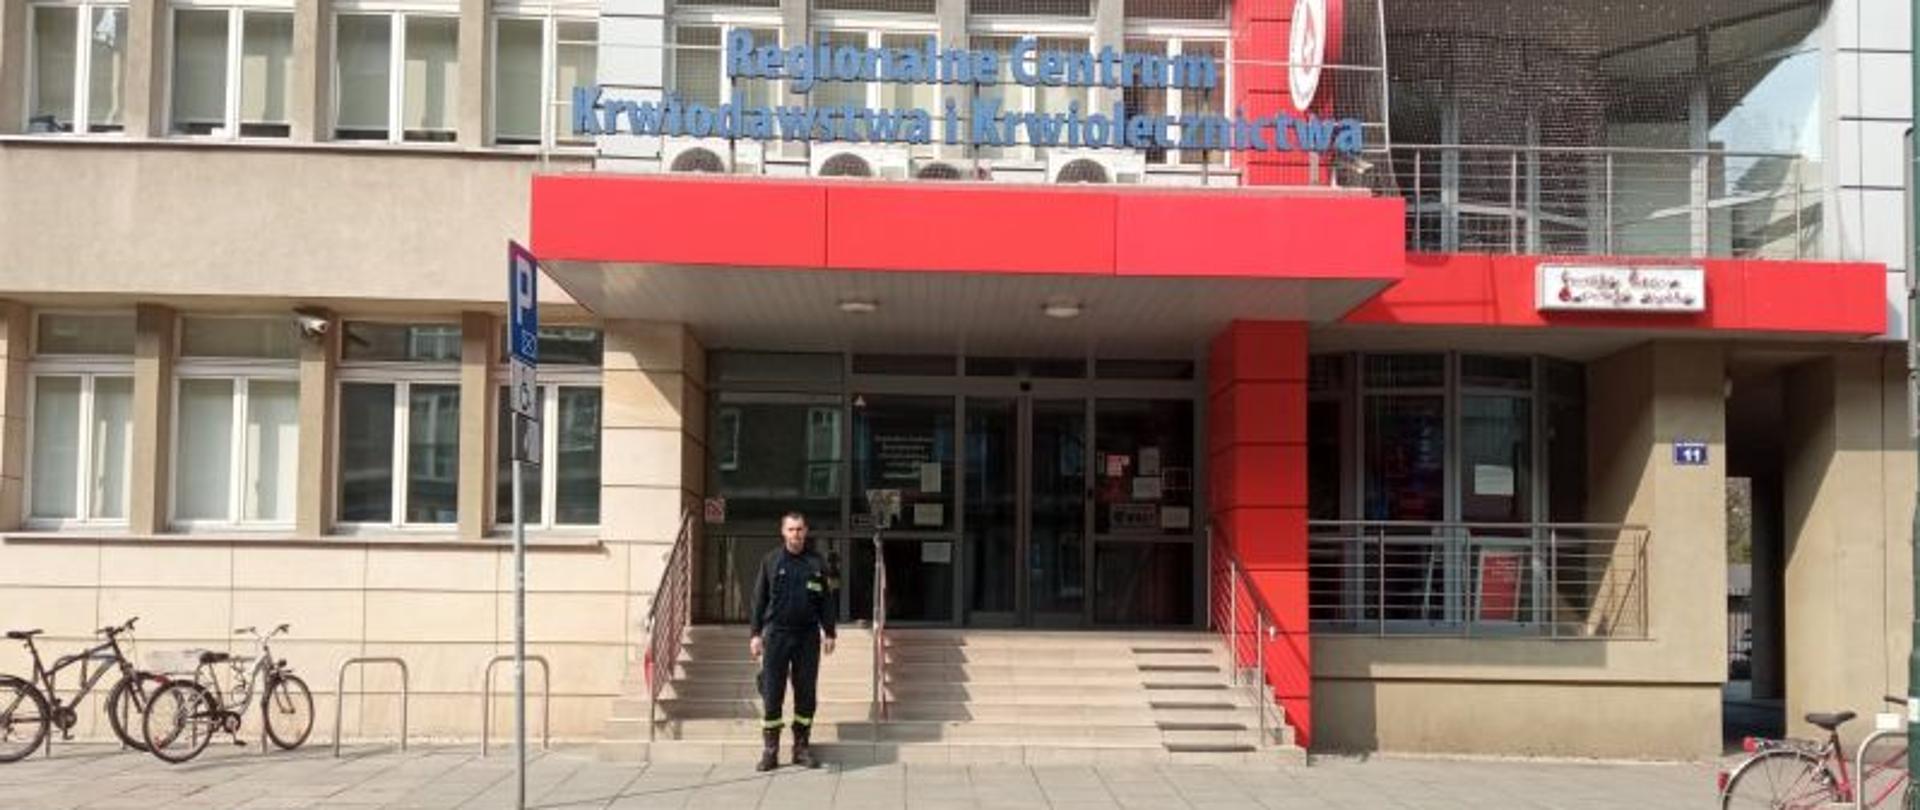 Zdjęcie przedstawia ogniomistrza Tadeusza Szopińskiego w umundurowaniu koszarowym stojącego przed wejściem głównym do Regionalnego Centrum Krwiodawstwa i Krwiolecznictwa w Krakowie